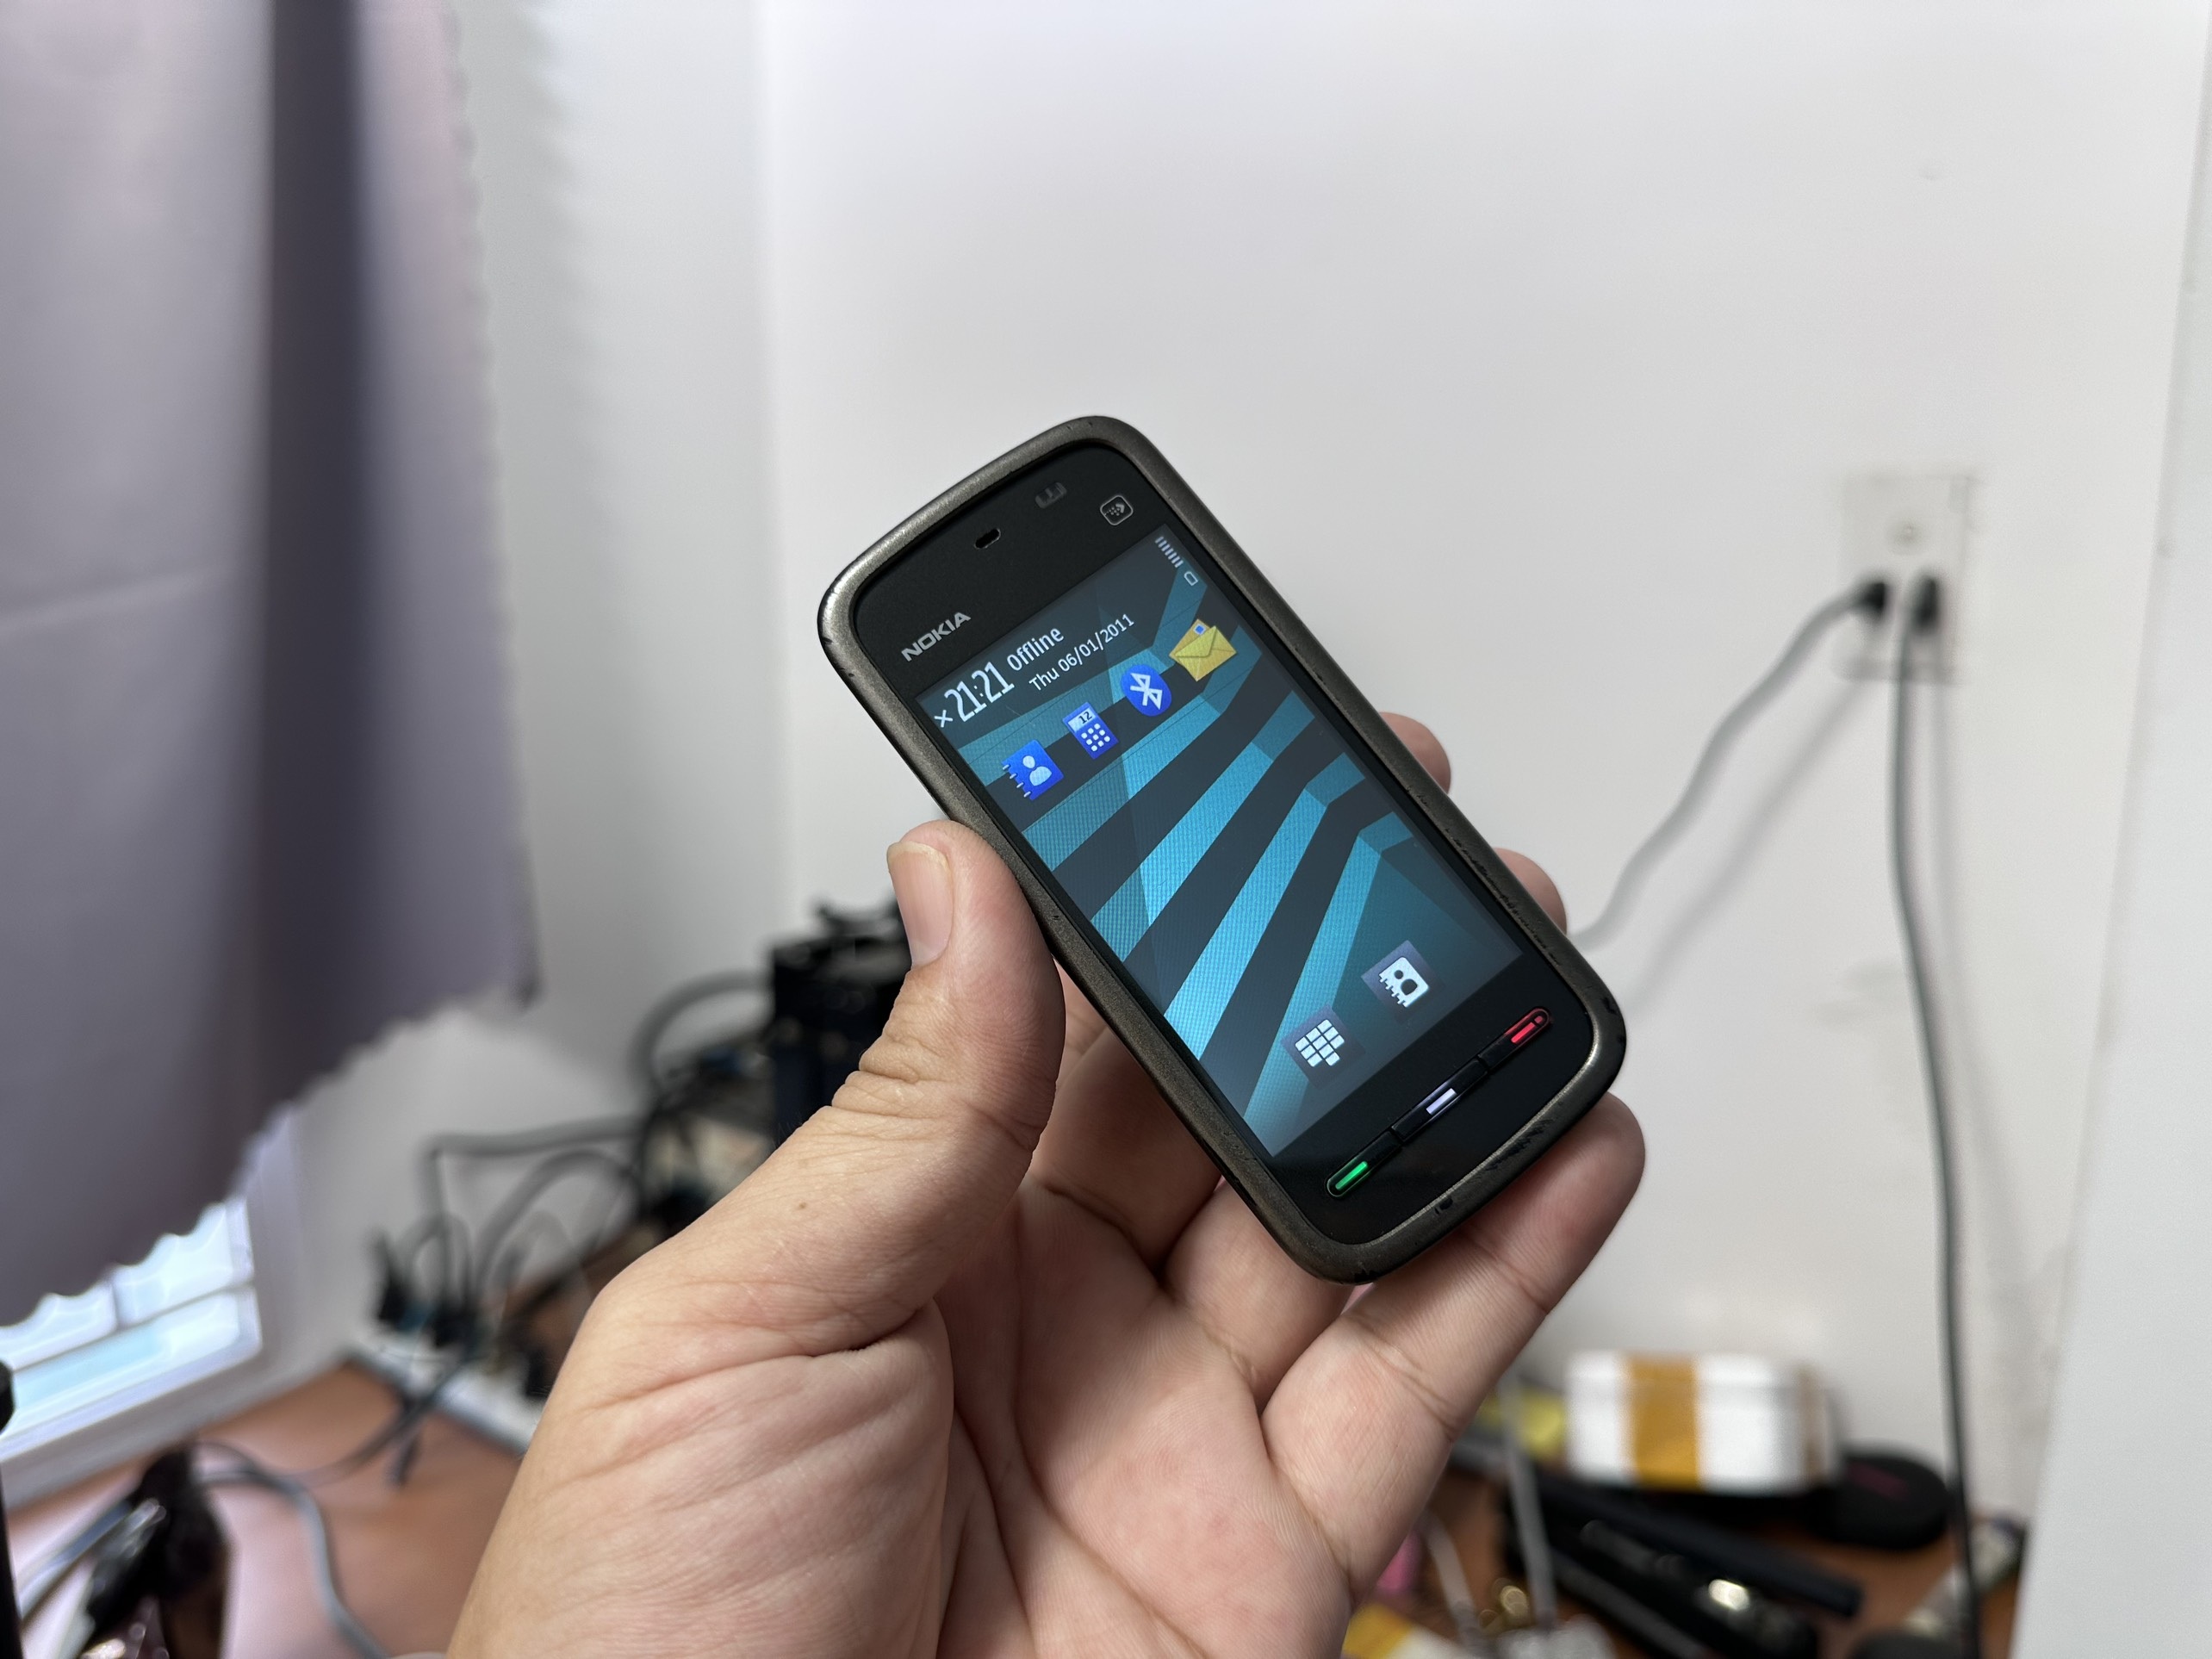 13. Nokia 5230 - Ra mắt năm 2009. Đây là một trong số ít chiếc điện thoại màn hình cảm ứng của Nokia đạt doanh số tốt, với hơn 150 triệu thiết bị bán ra trên toàn cầu. Sản phẩm hoạt động trên nền tảng Symbian do Nokia phát triển, nhưng không trang bị kết nối WiFi (Ảnh: Laz).